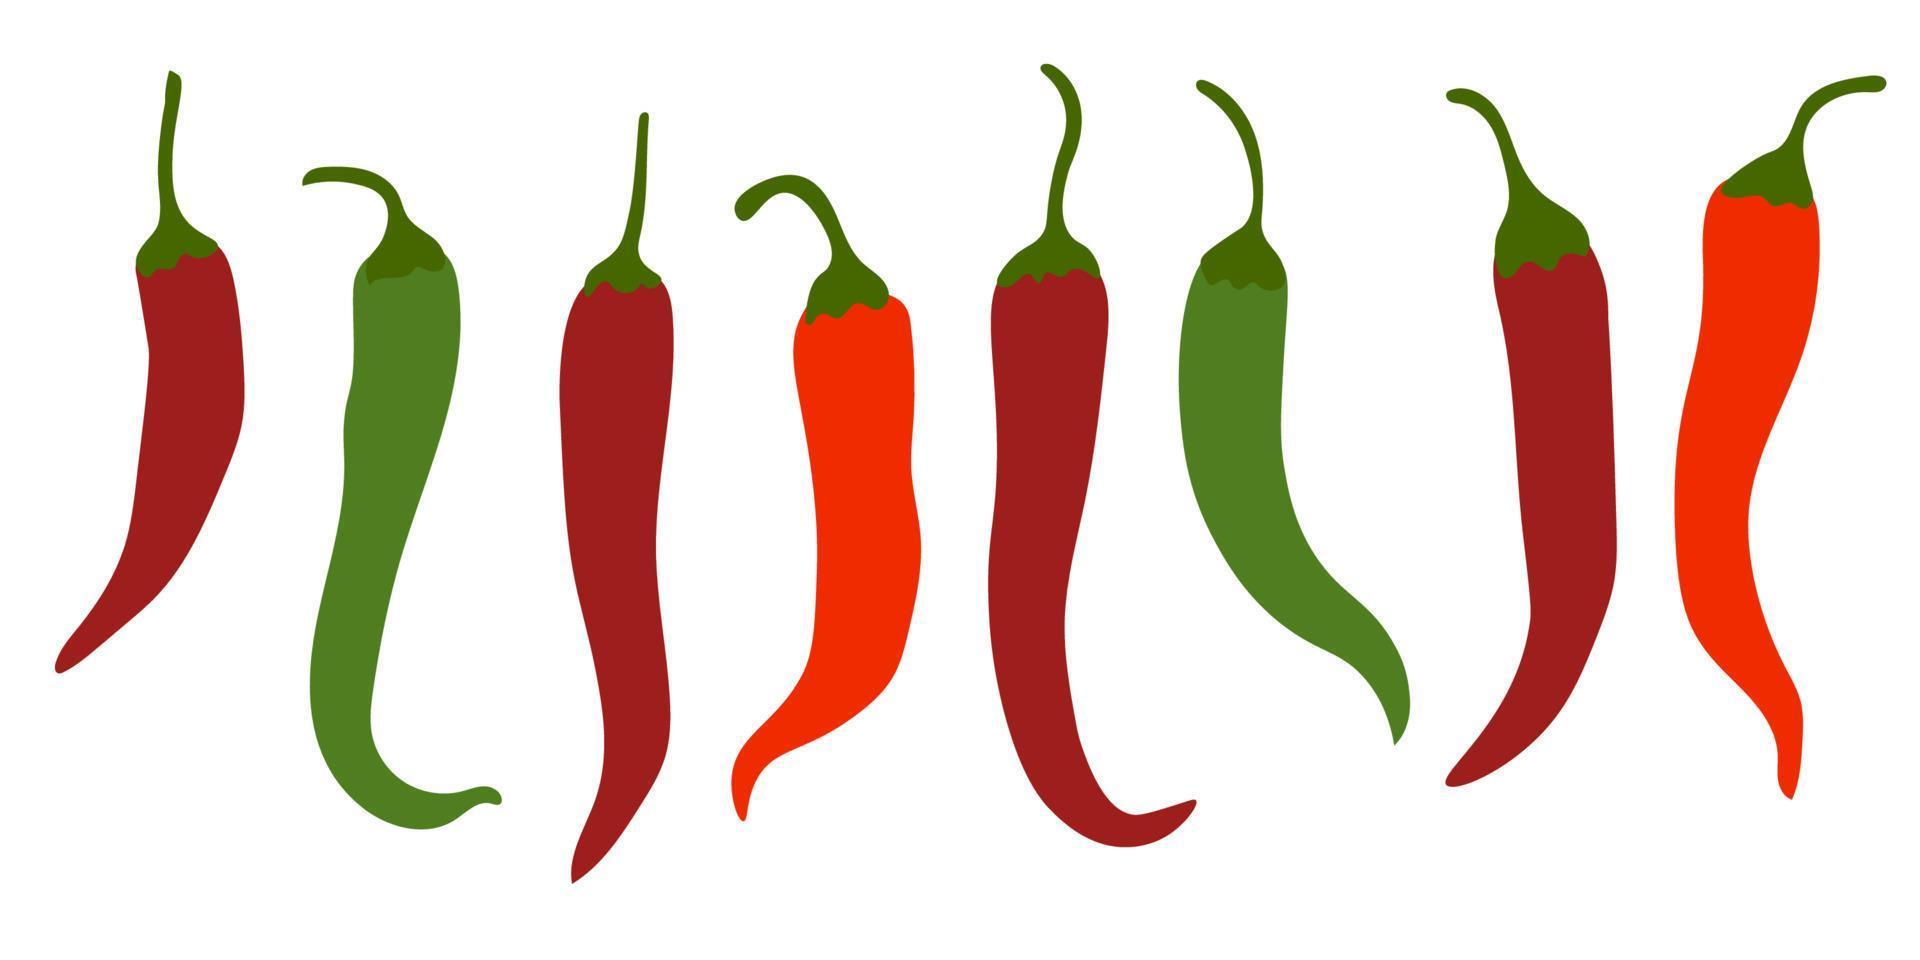 chiles picantes, iconos planos rojos y verdes, verduras para platos calientes aislados en fondo blanco. vector